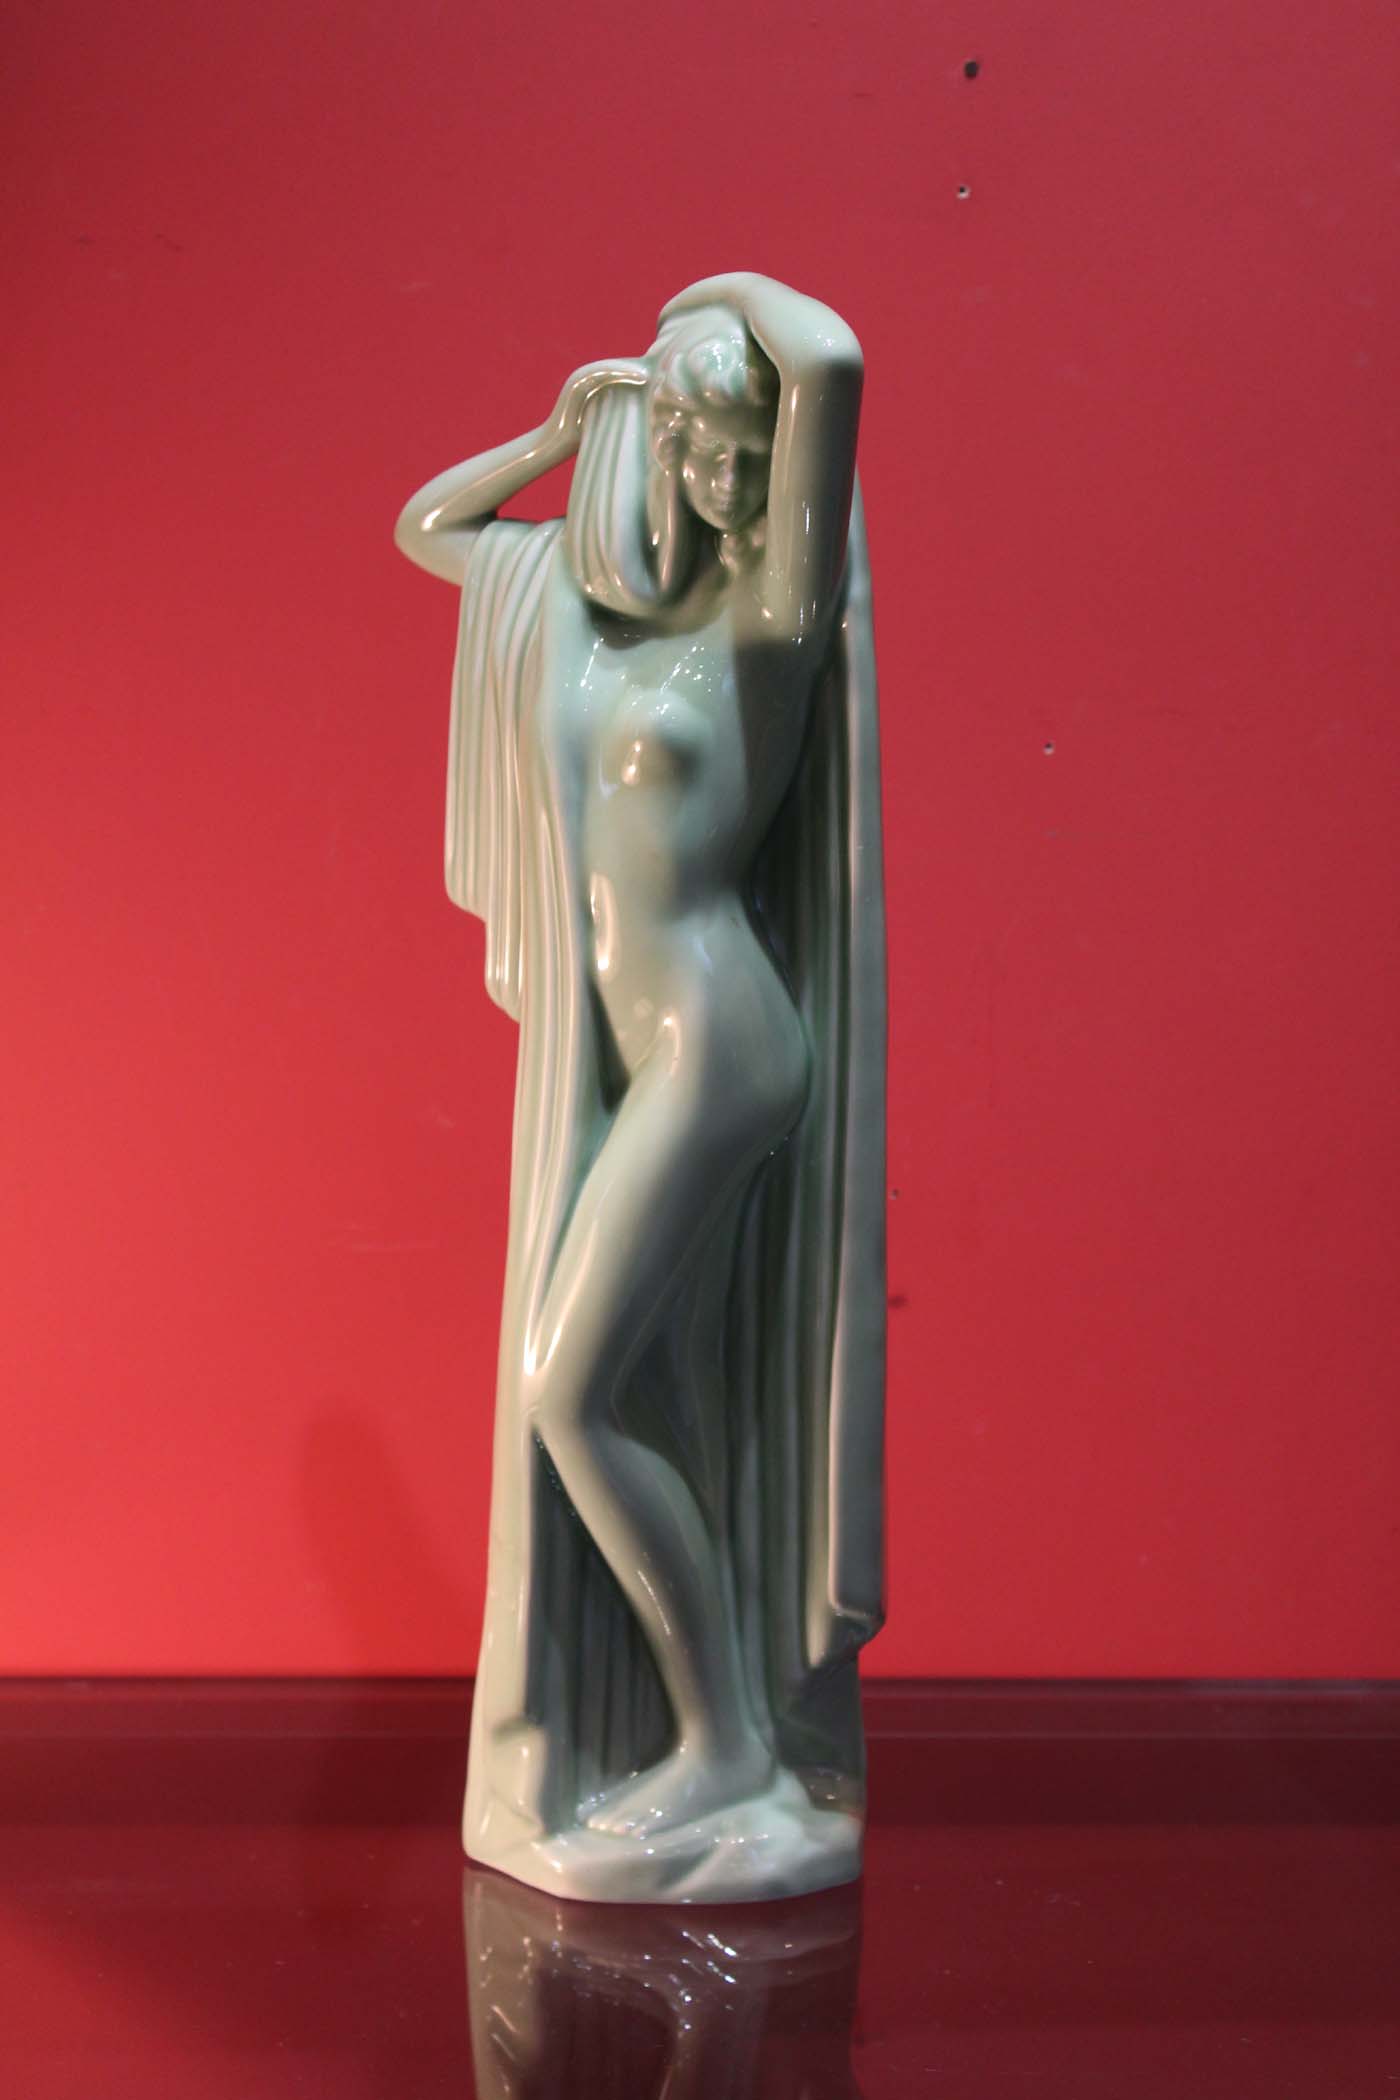 AN ART DECO PORCELAIN STATUE OF A LADY, 19  1/4" high (49cm).